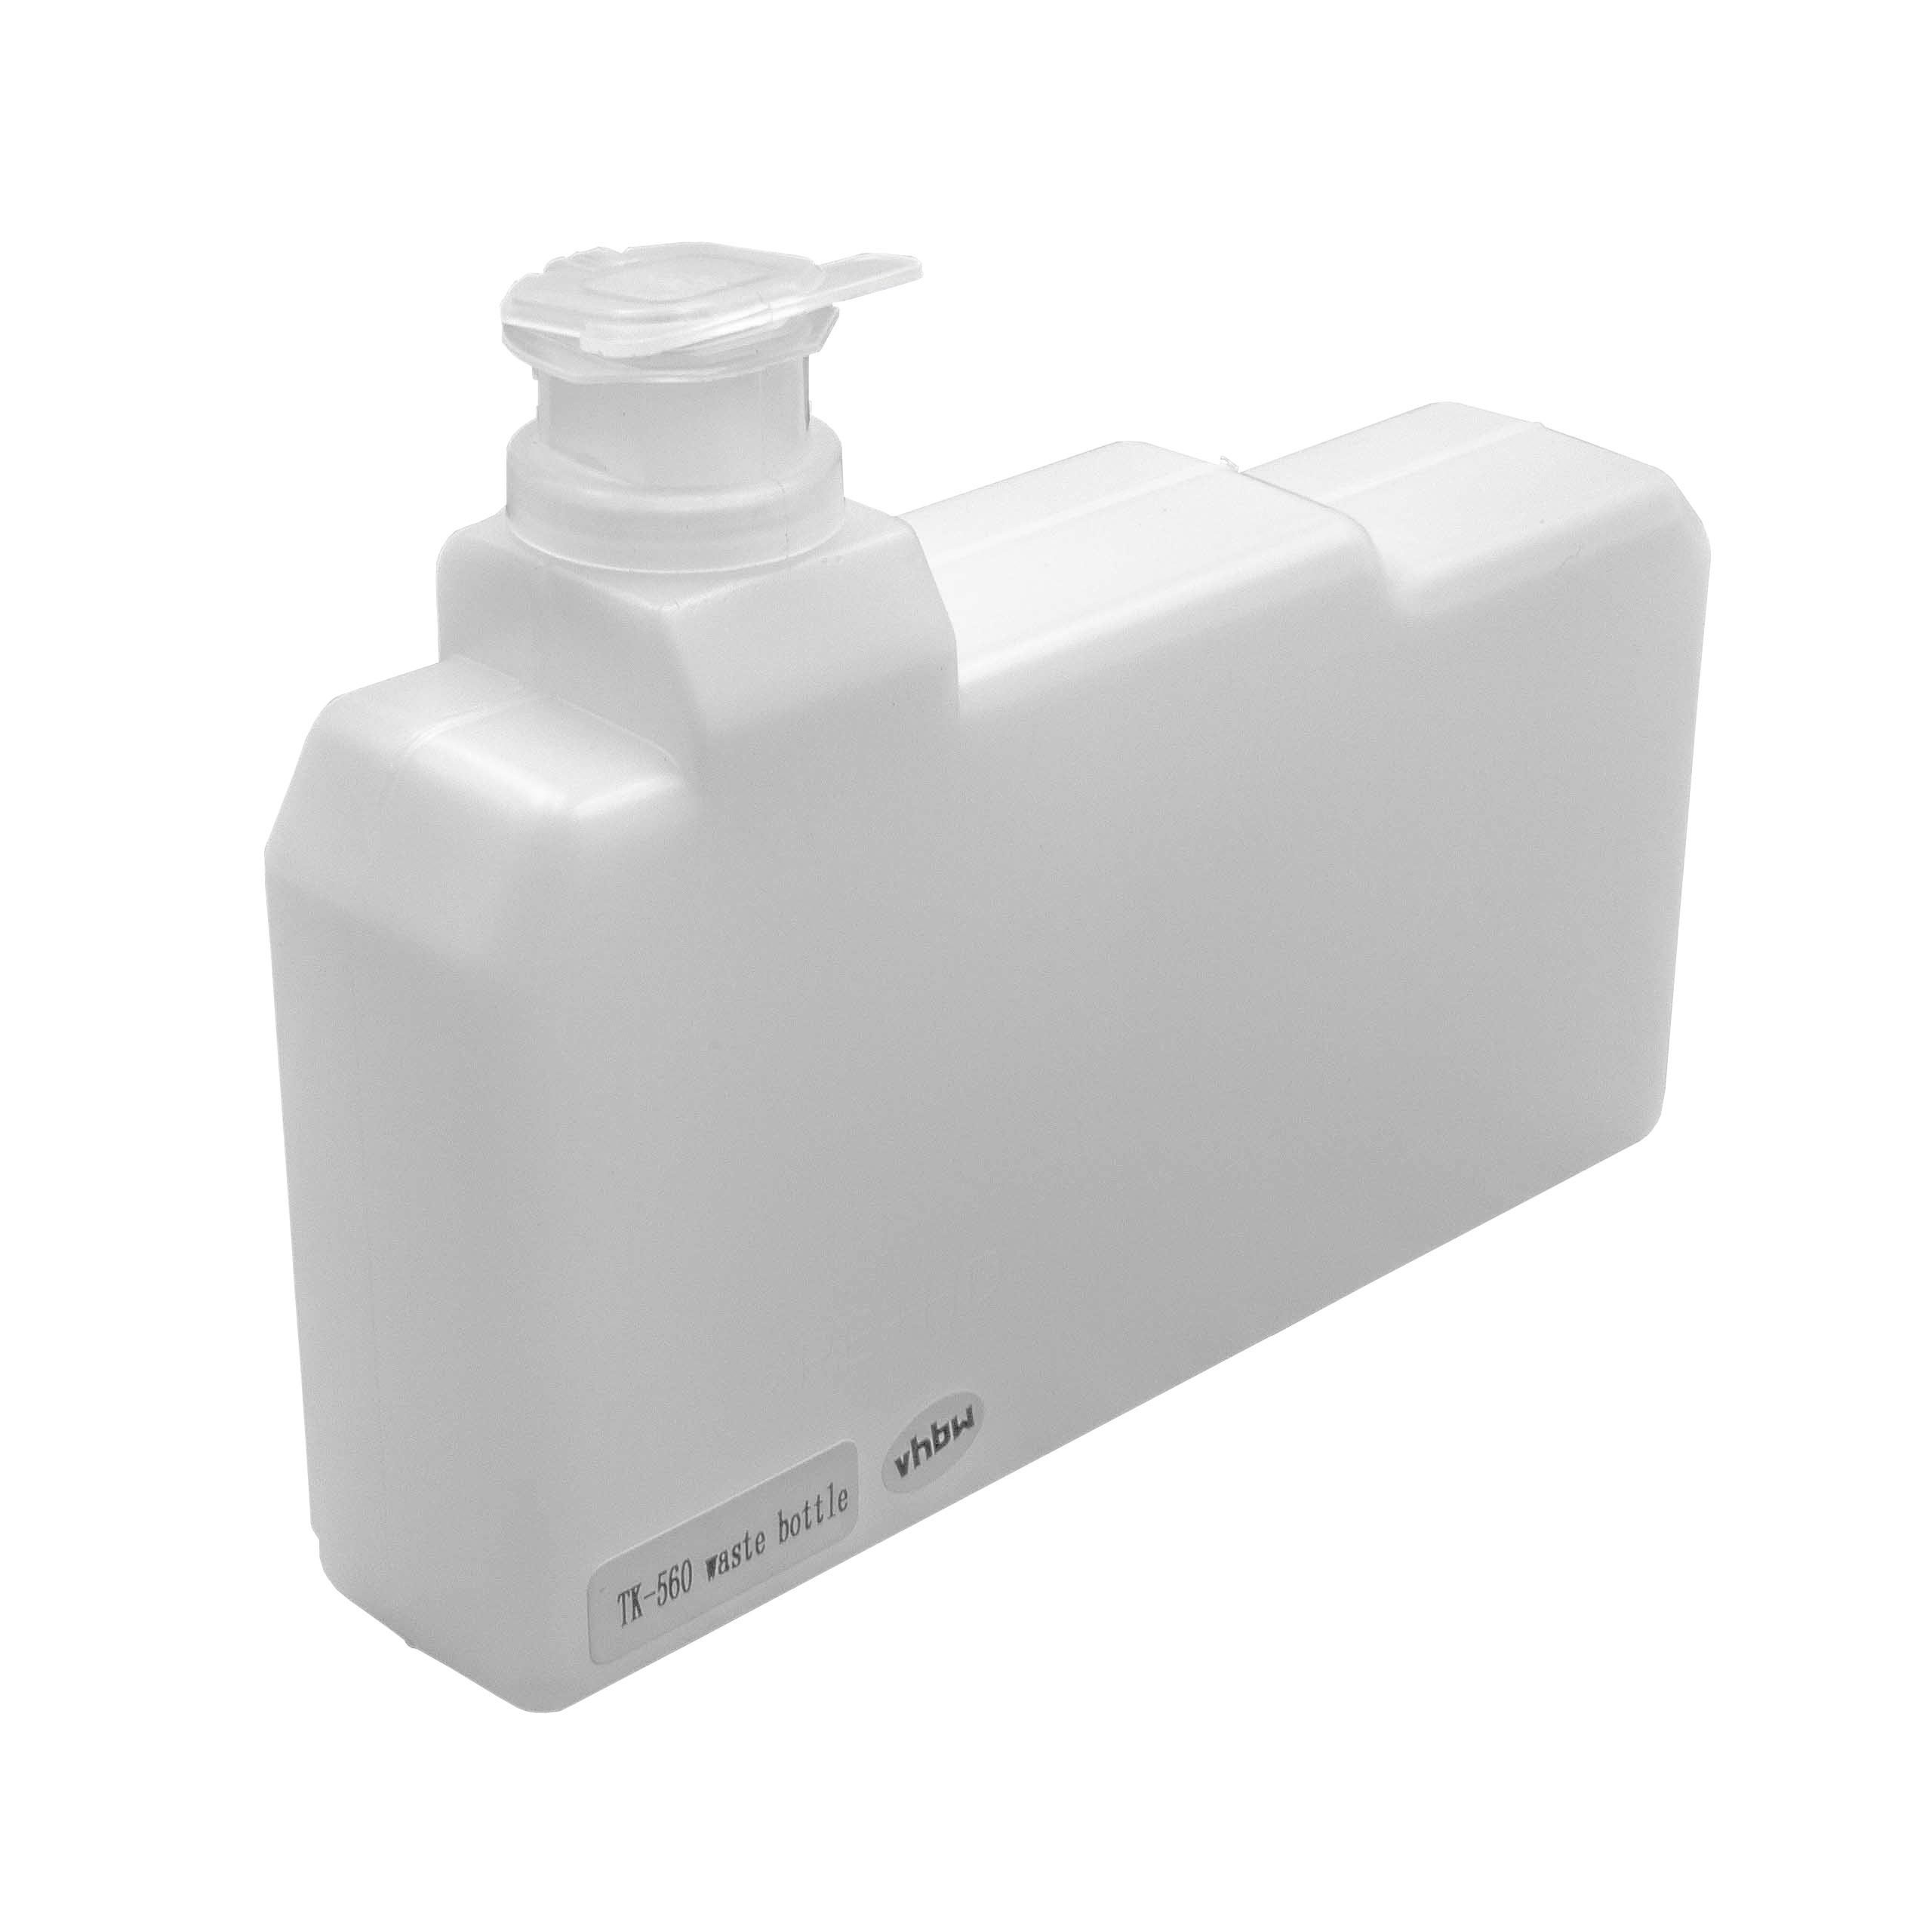 Depósito tóner reemplaza Kyocera WT-560 para impresora Kyocera - blanco